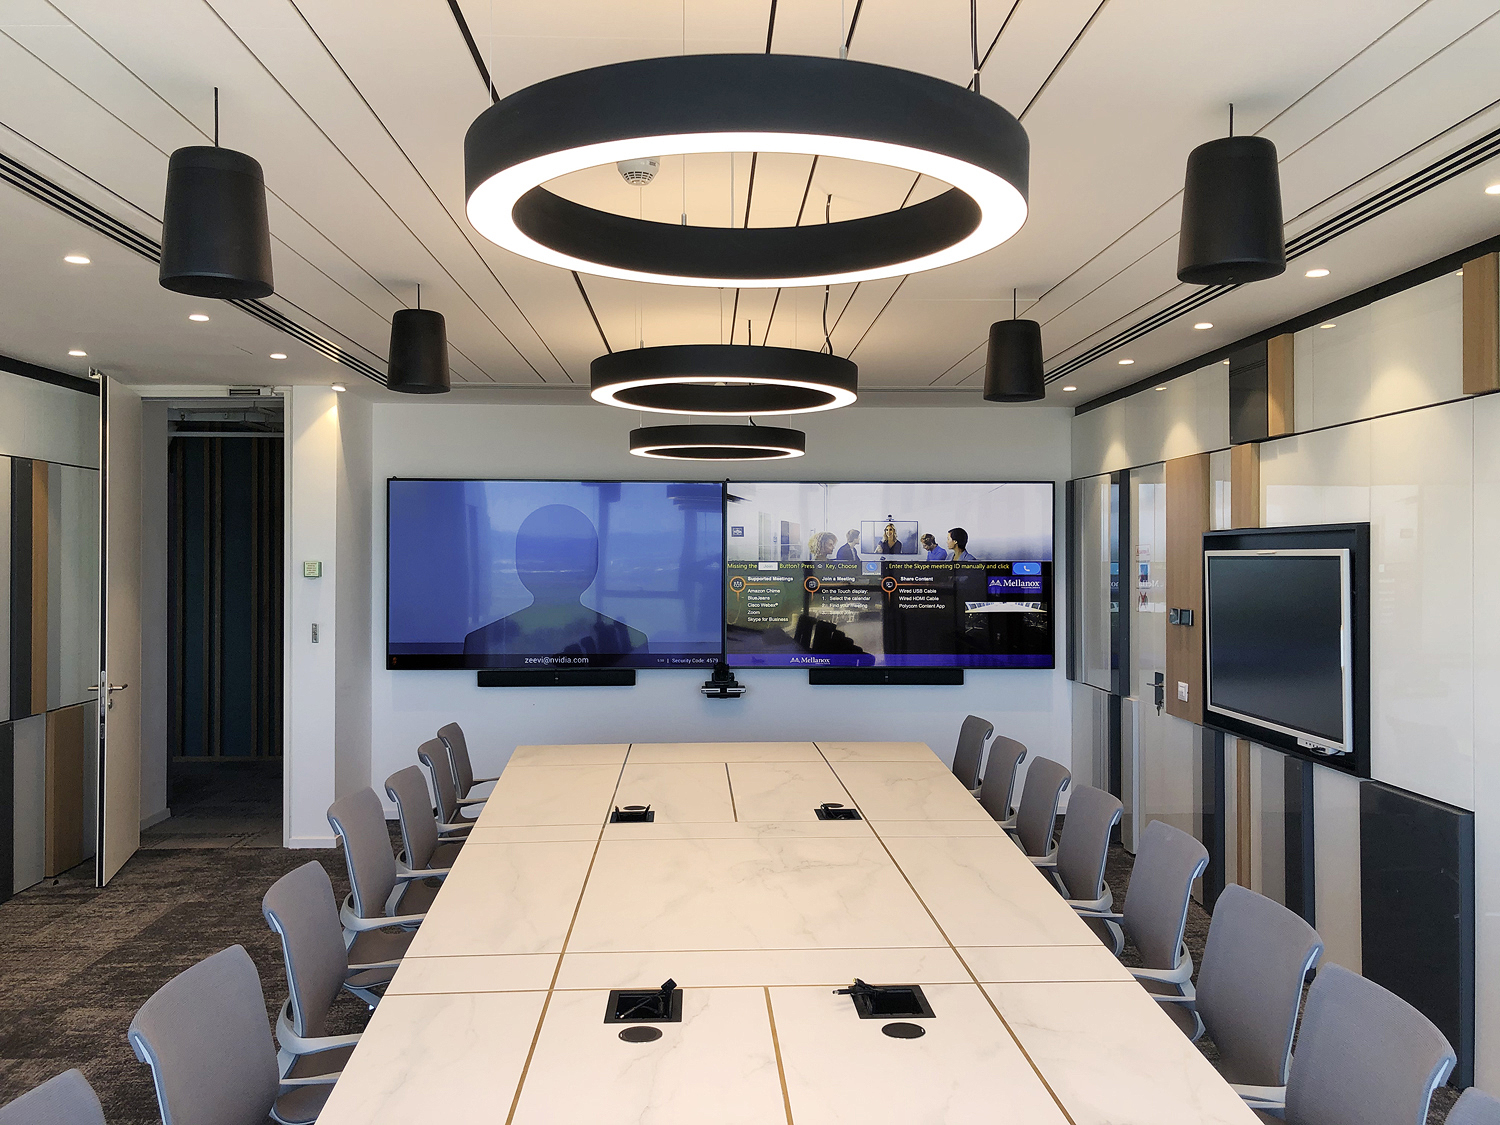 Chaque salle de réunion devait allier discrétion et professionnalisme, avec une table de conférence élégante, un éclairage indirect, et des enceintes plafond noires SF 26PT Extron.